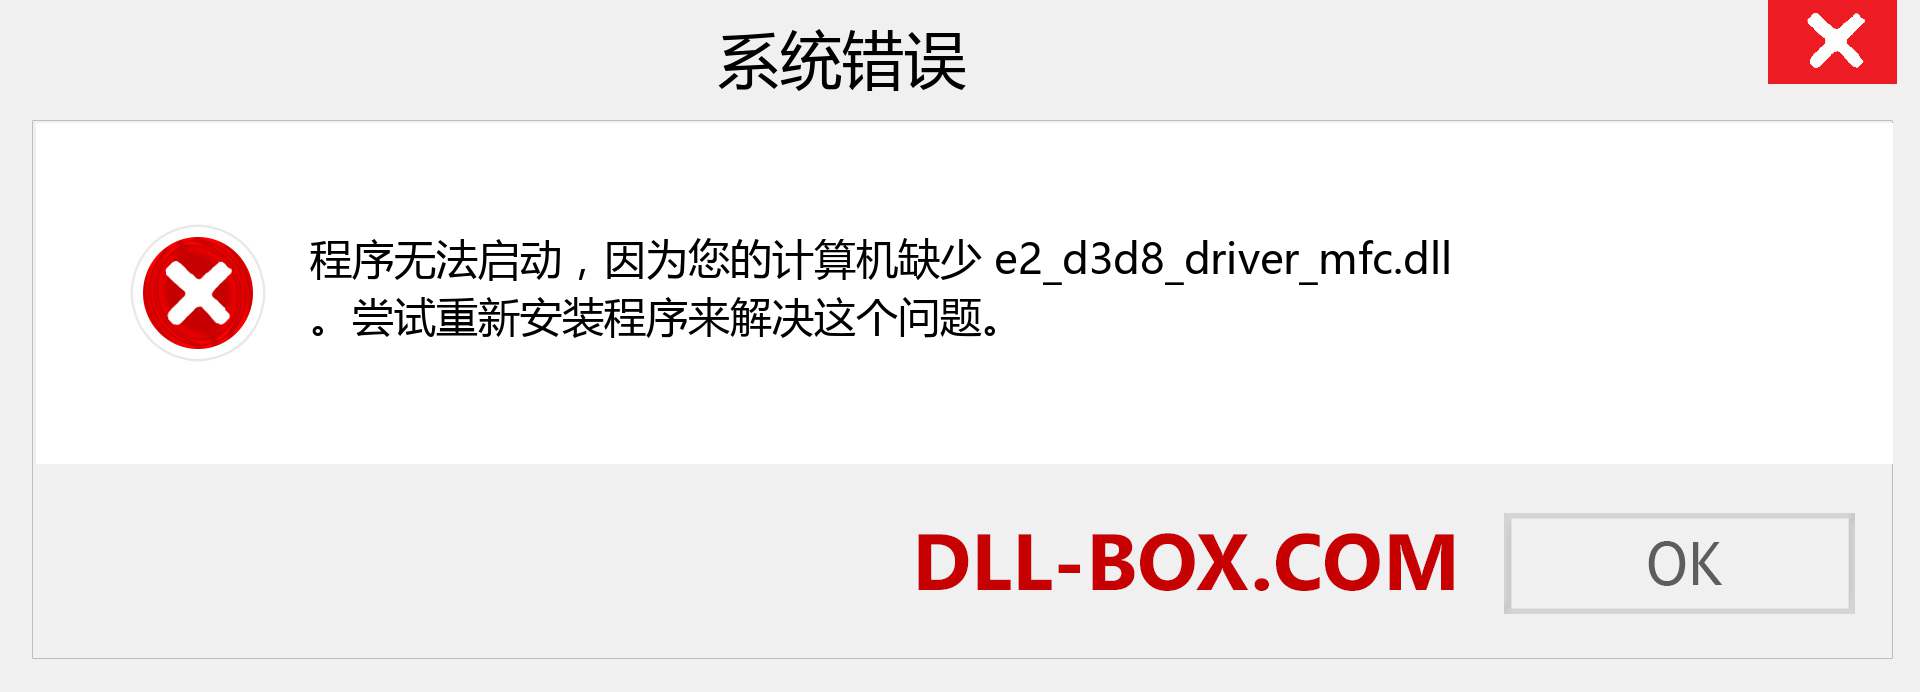 e2_d3d8_driver_mfc.dll 文件丢失？。 适用于 Windows 7、8、10 的下载 - 修复 Windows、照片、图像上的 e2_d3d8_driver_mfc dll 丢失错误